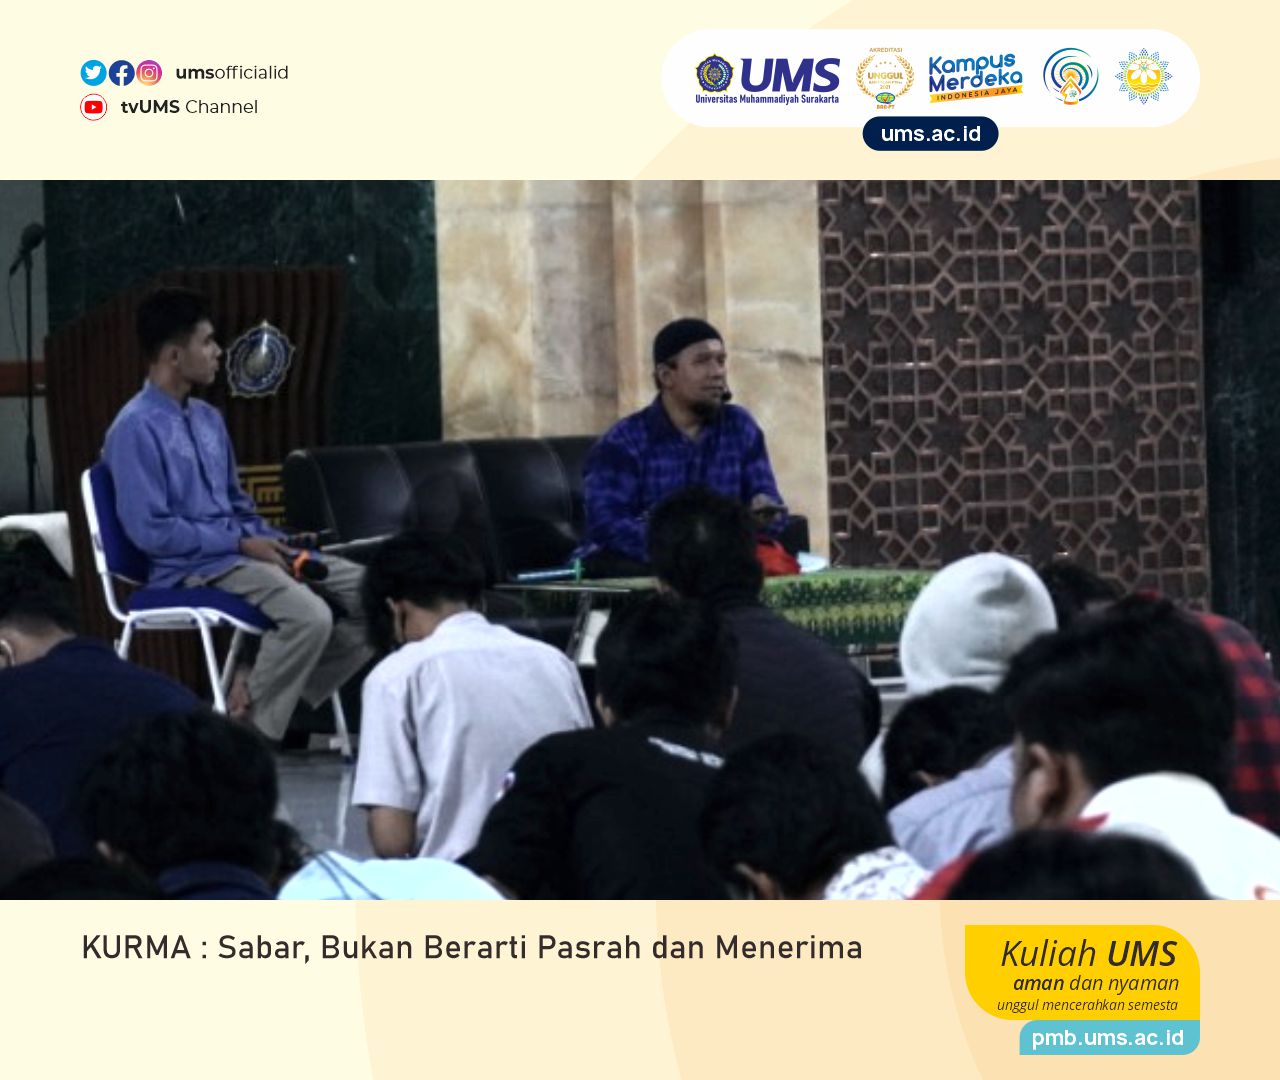 You are currently viewing KURMA : Sabar, Bukan Berarti Pasrah dan Menerima